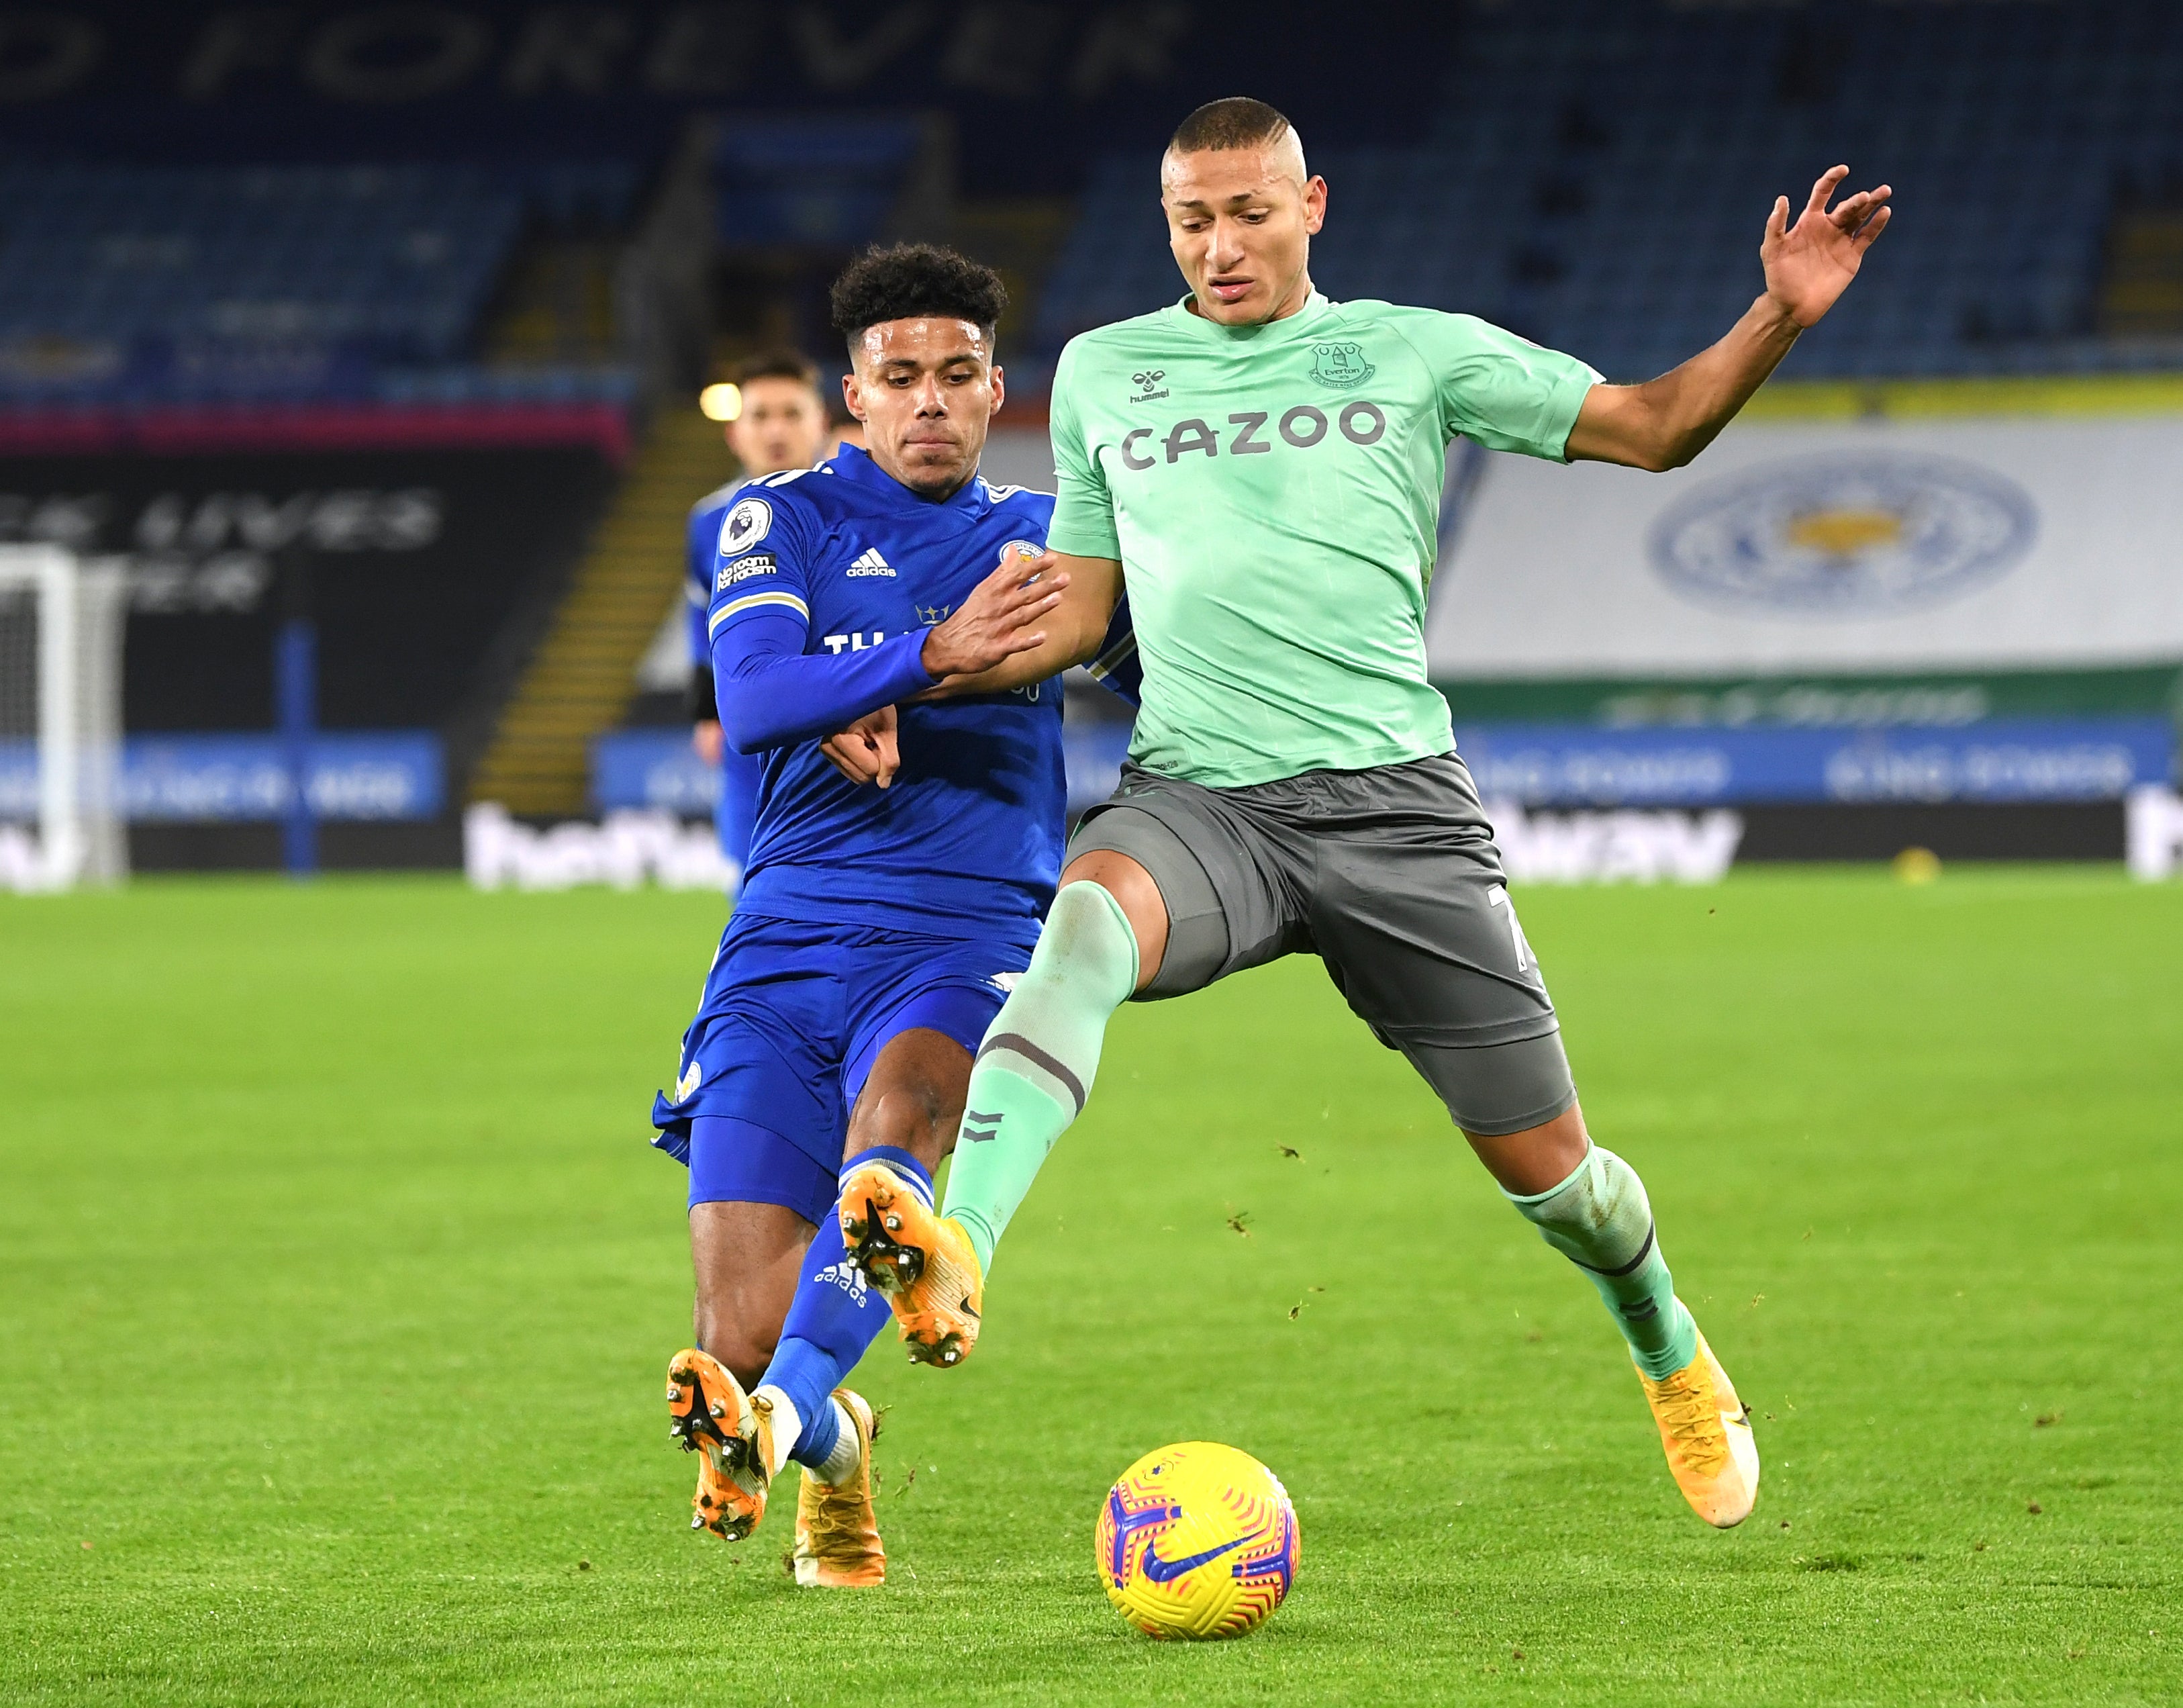 El atacante brasileño de Everton Richarlison, derecha, se disputa el balón con el jugador de Leicester Wesley Fofana en un partido de la Liga Premier inglesa el miércoles, 16 de diciembre del 2020. &nbsp;